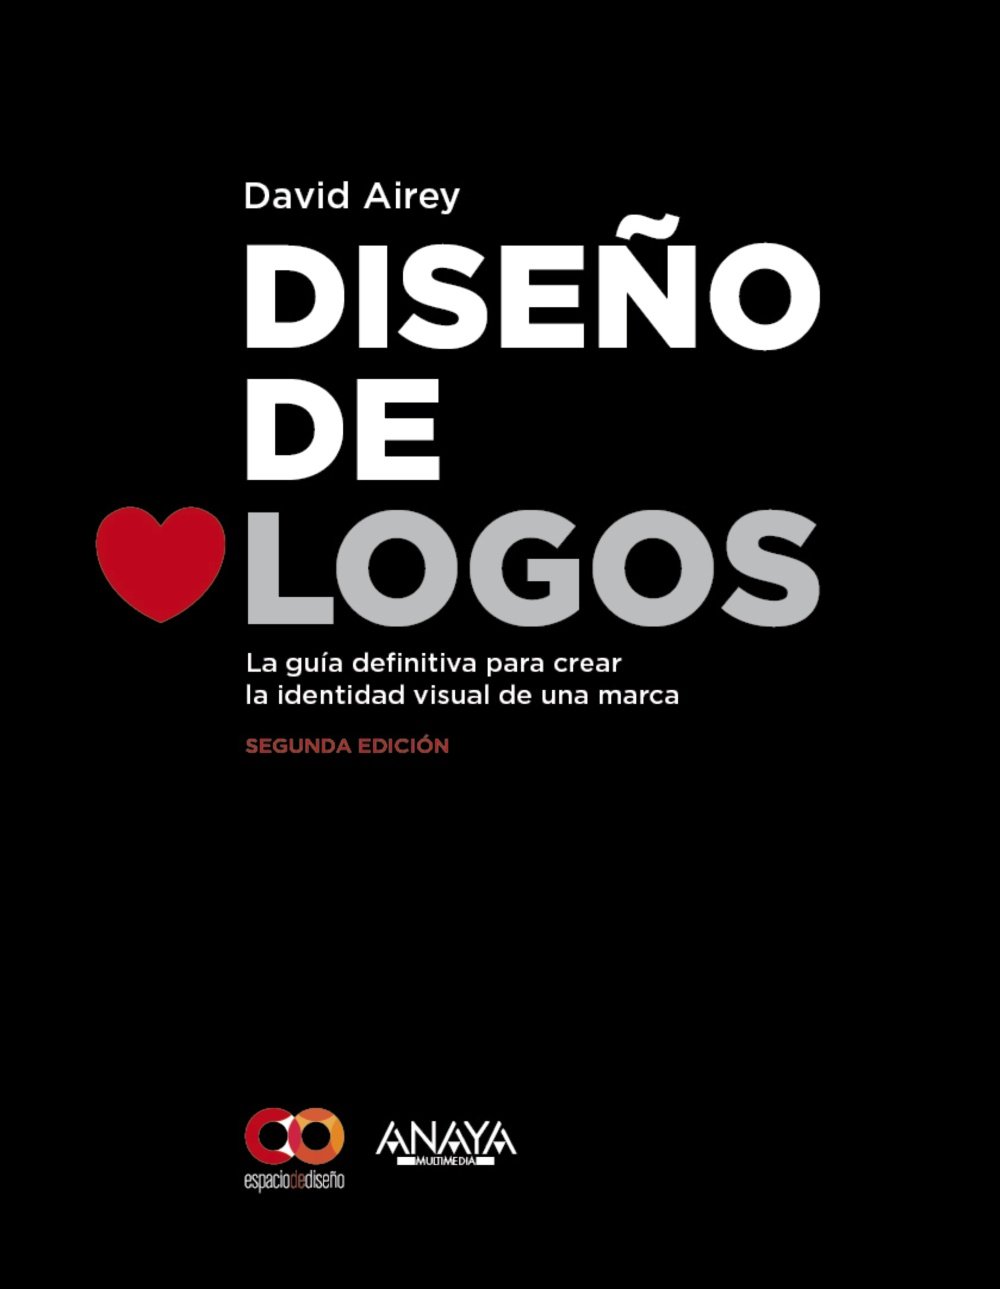 El libro Diseño de Logos es una guía para crear una identidad gráfica que te dice como crear el emblema que representará tu marca y todo sus valores.